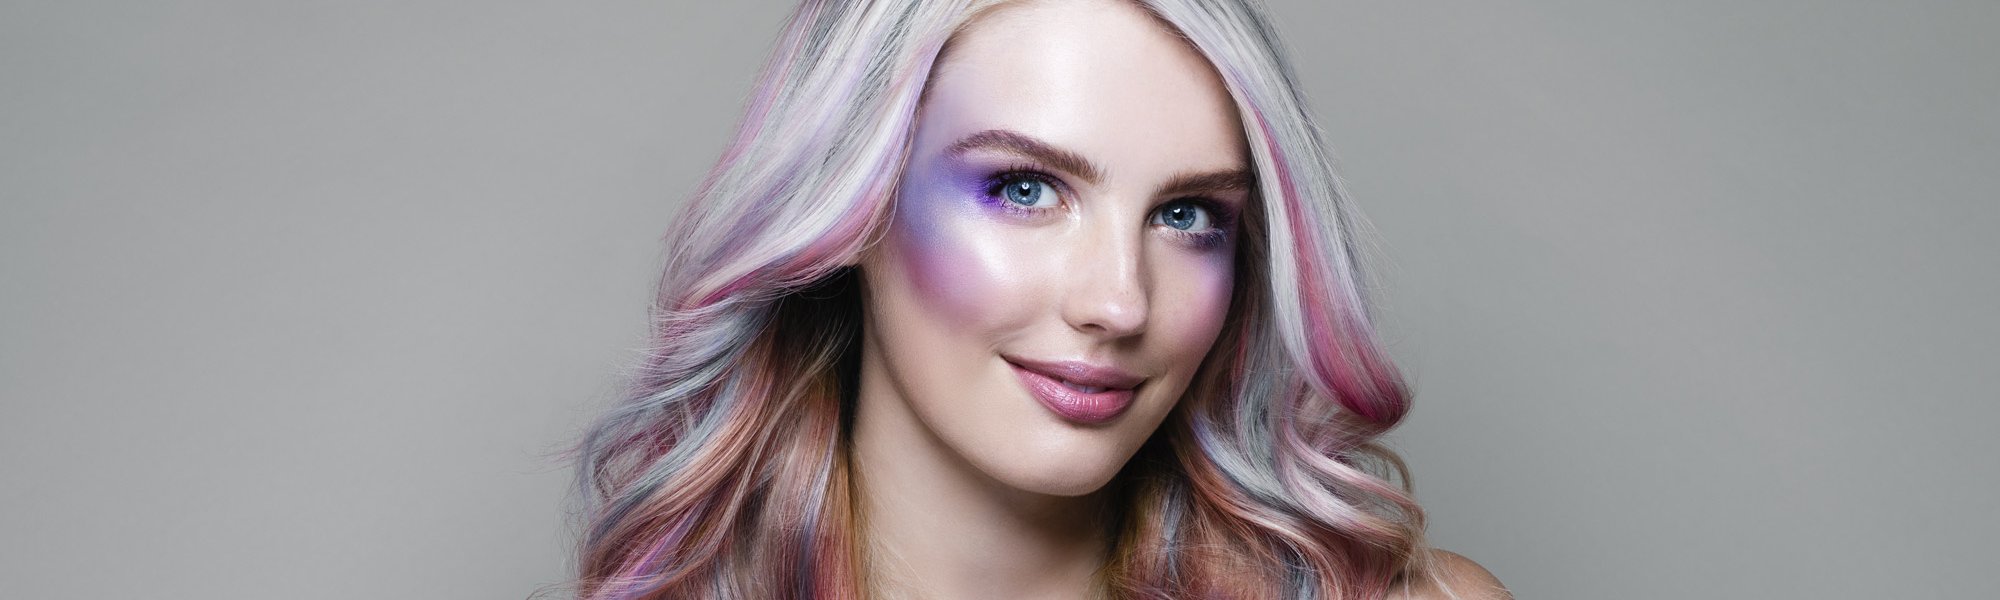 Get The Look: Galaxy Queen Hair For Halloween | L'Oréal Paris